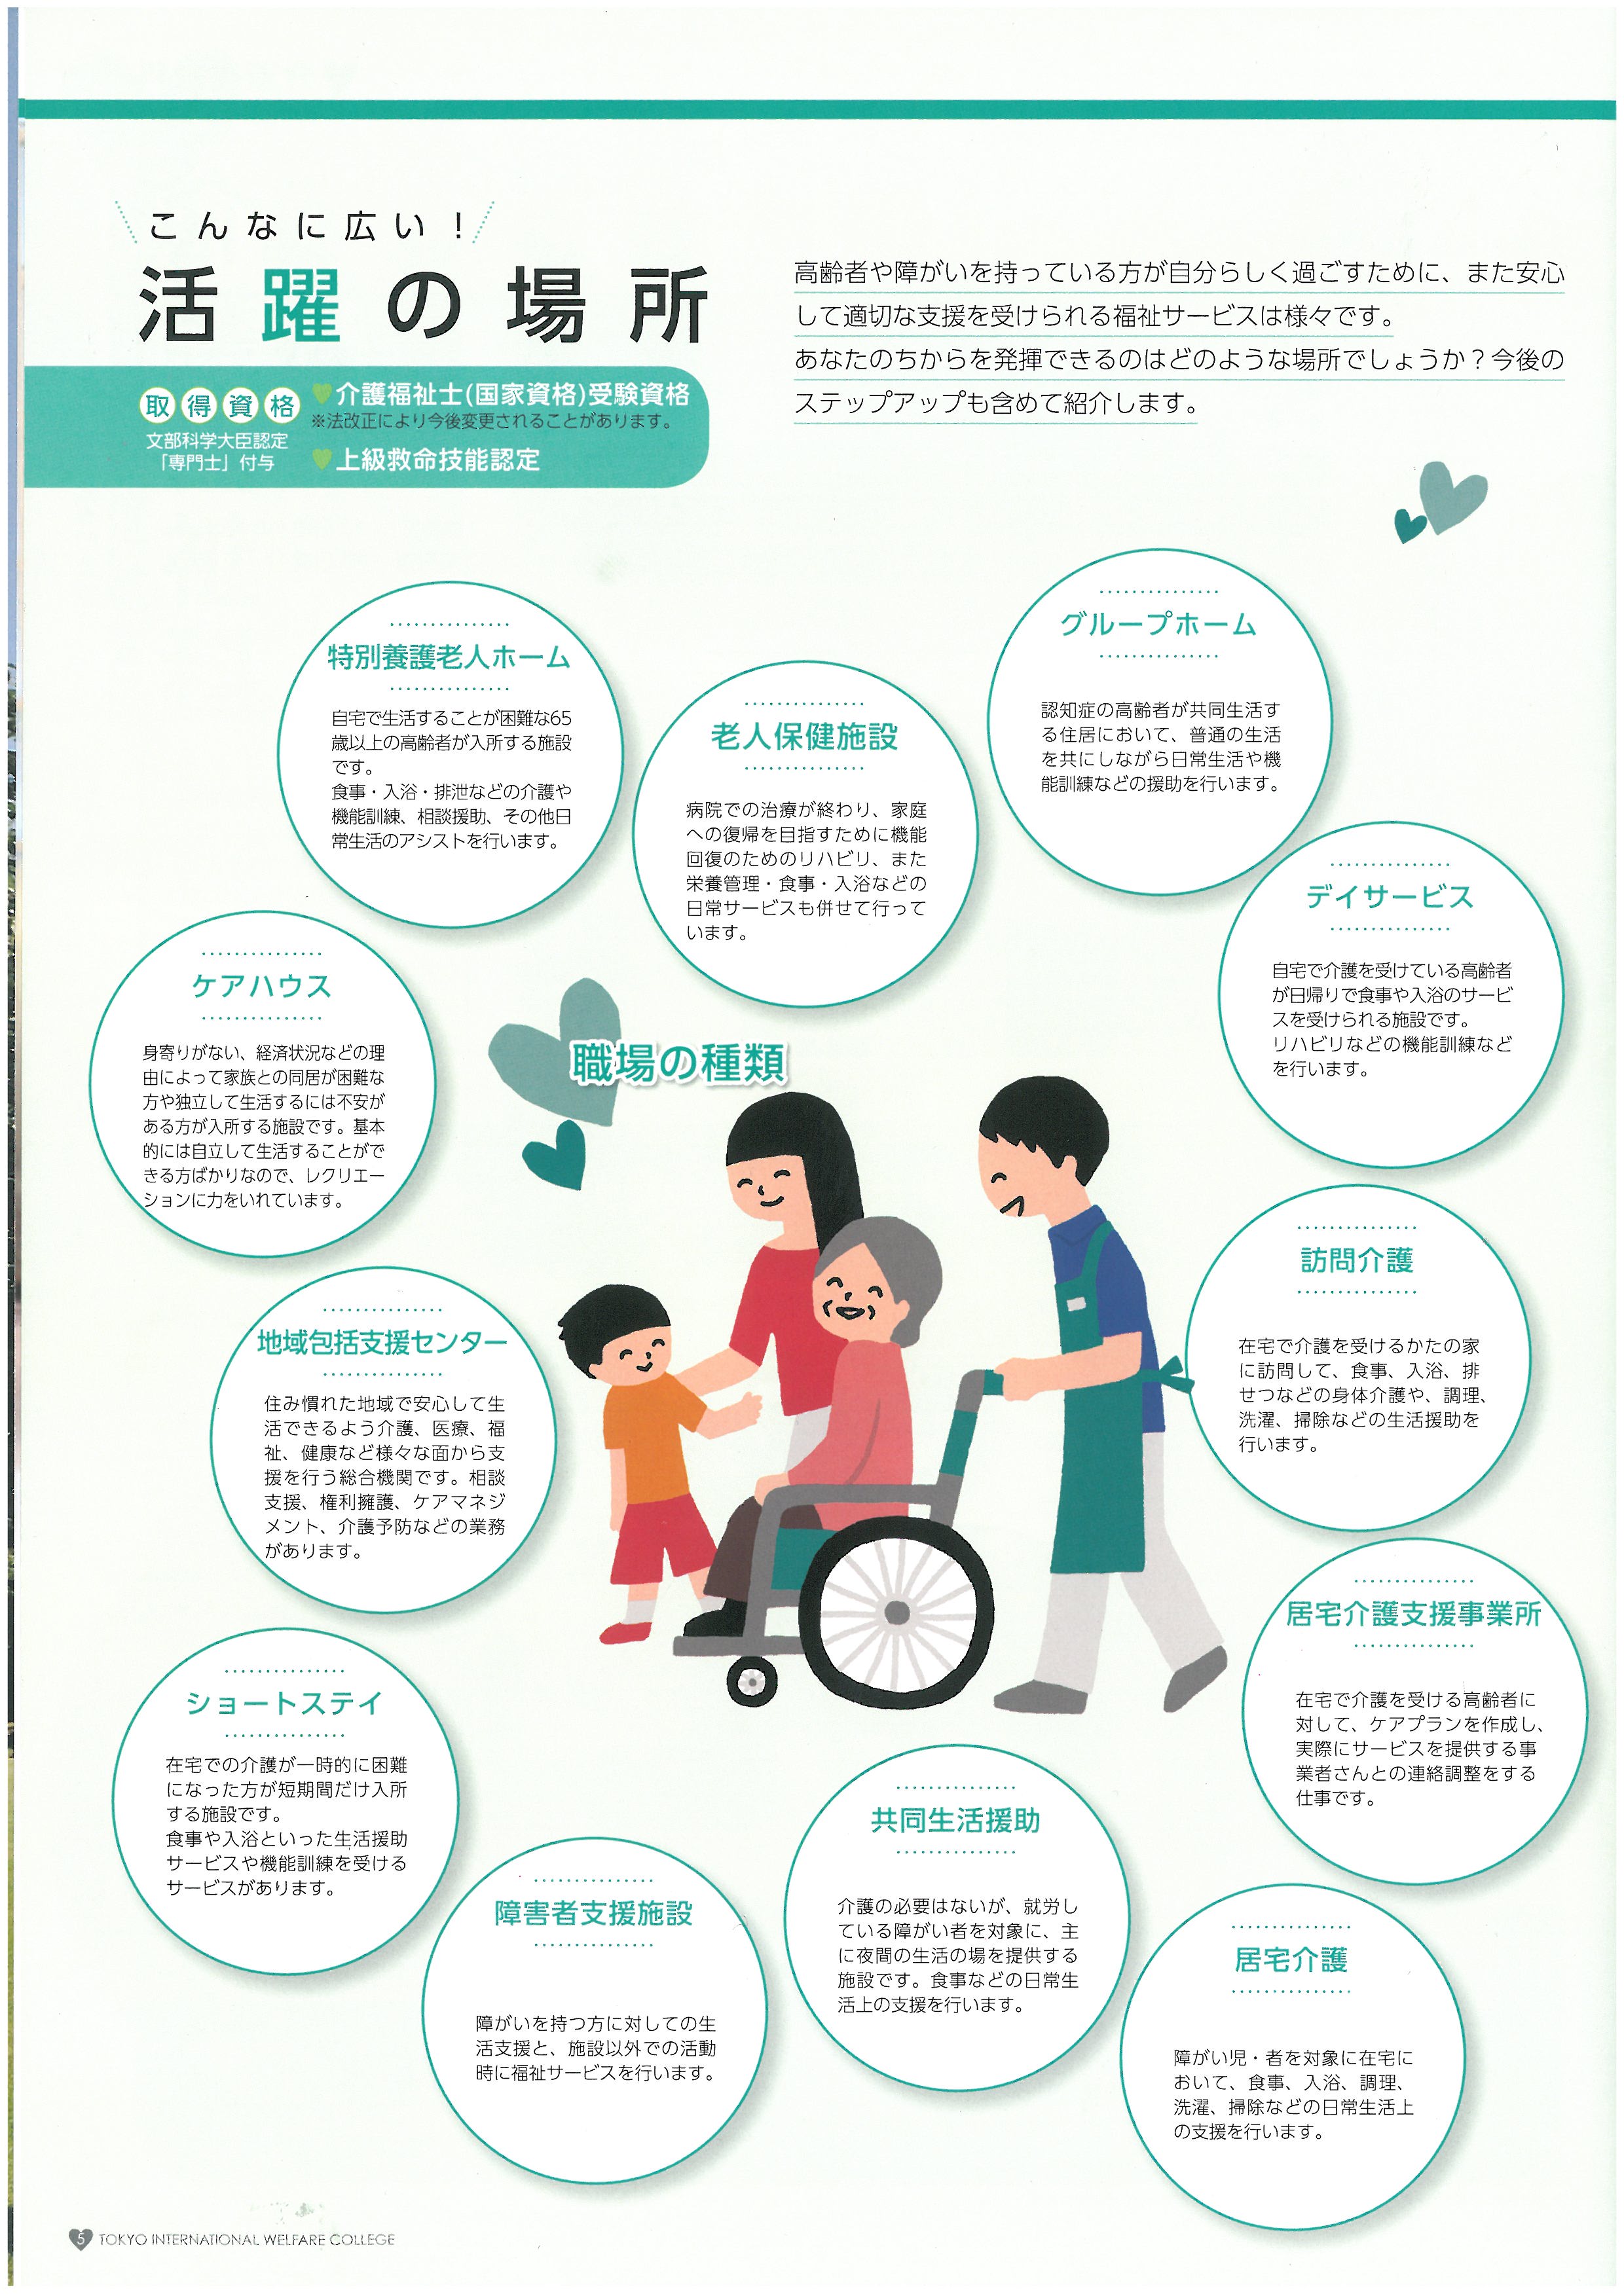 도쿄 국제복지전문학교 홍보 팜플렛 06.jpg